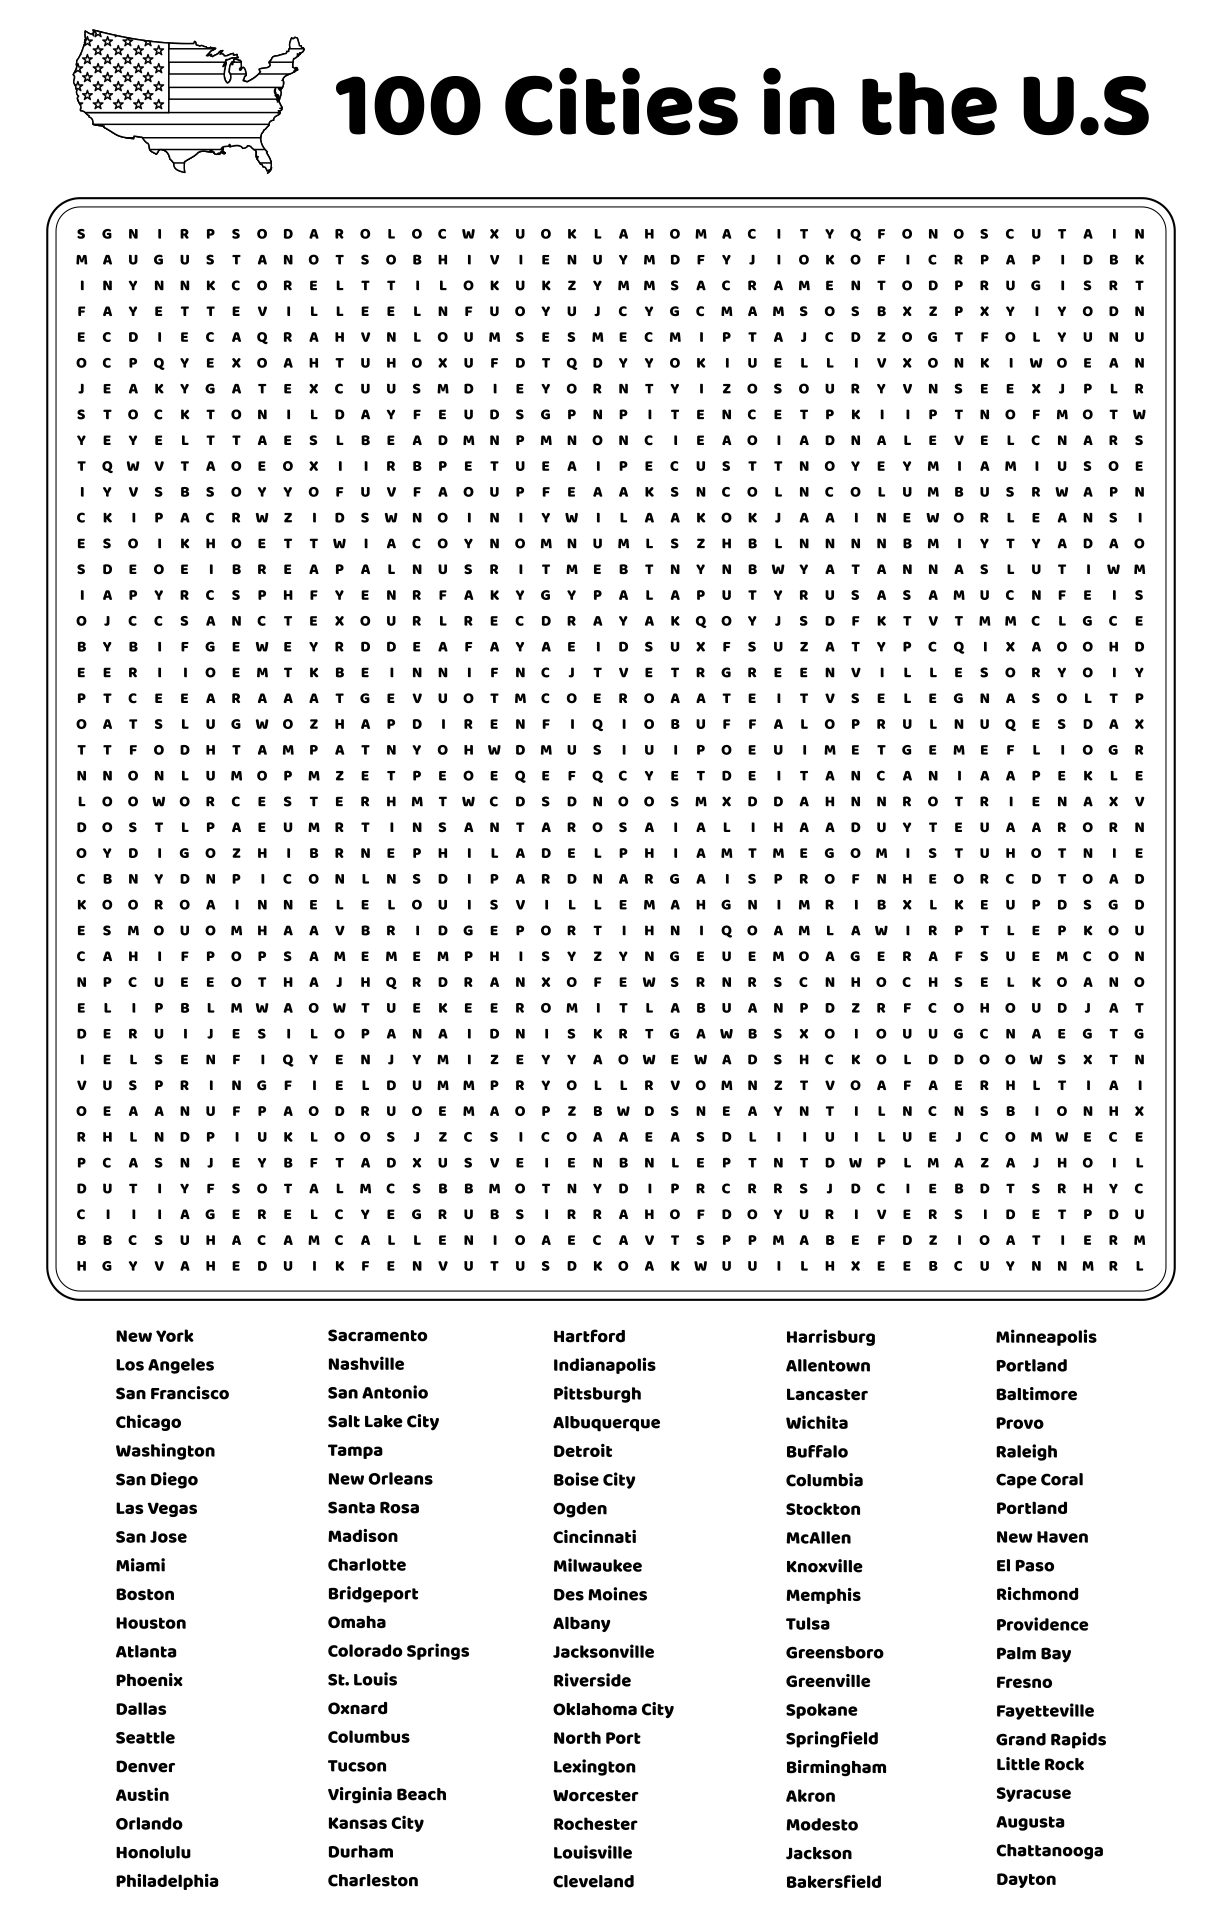 100 Word Search Printable Printable Blank World